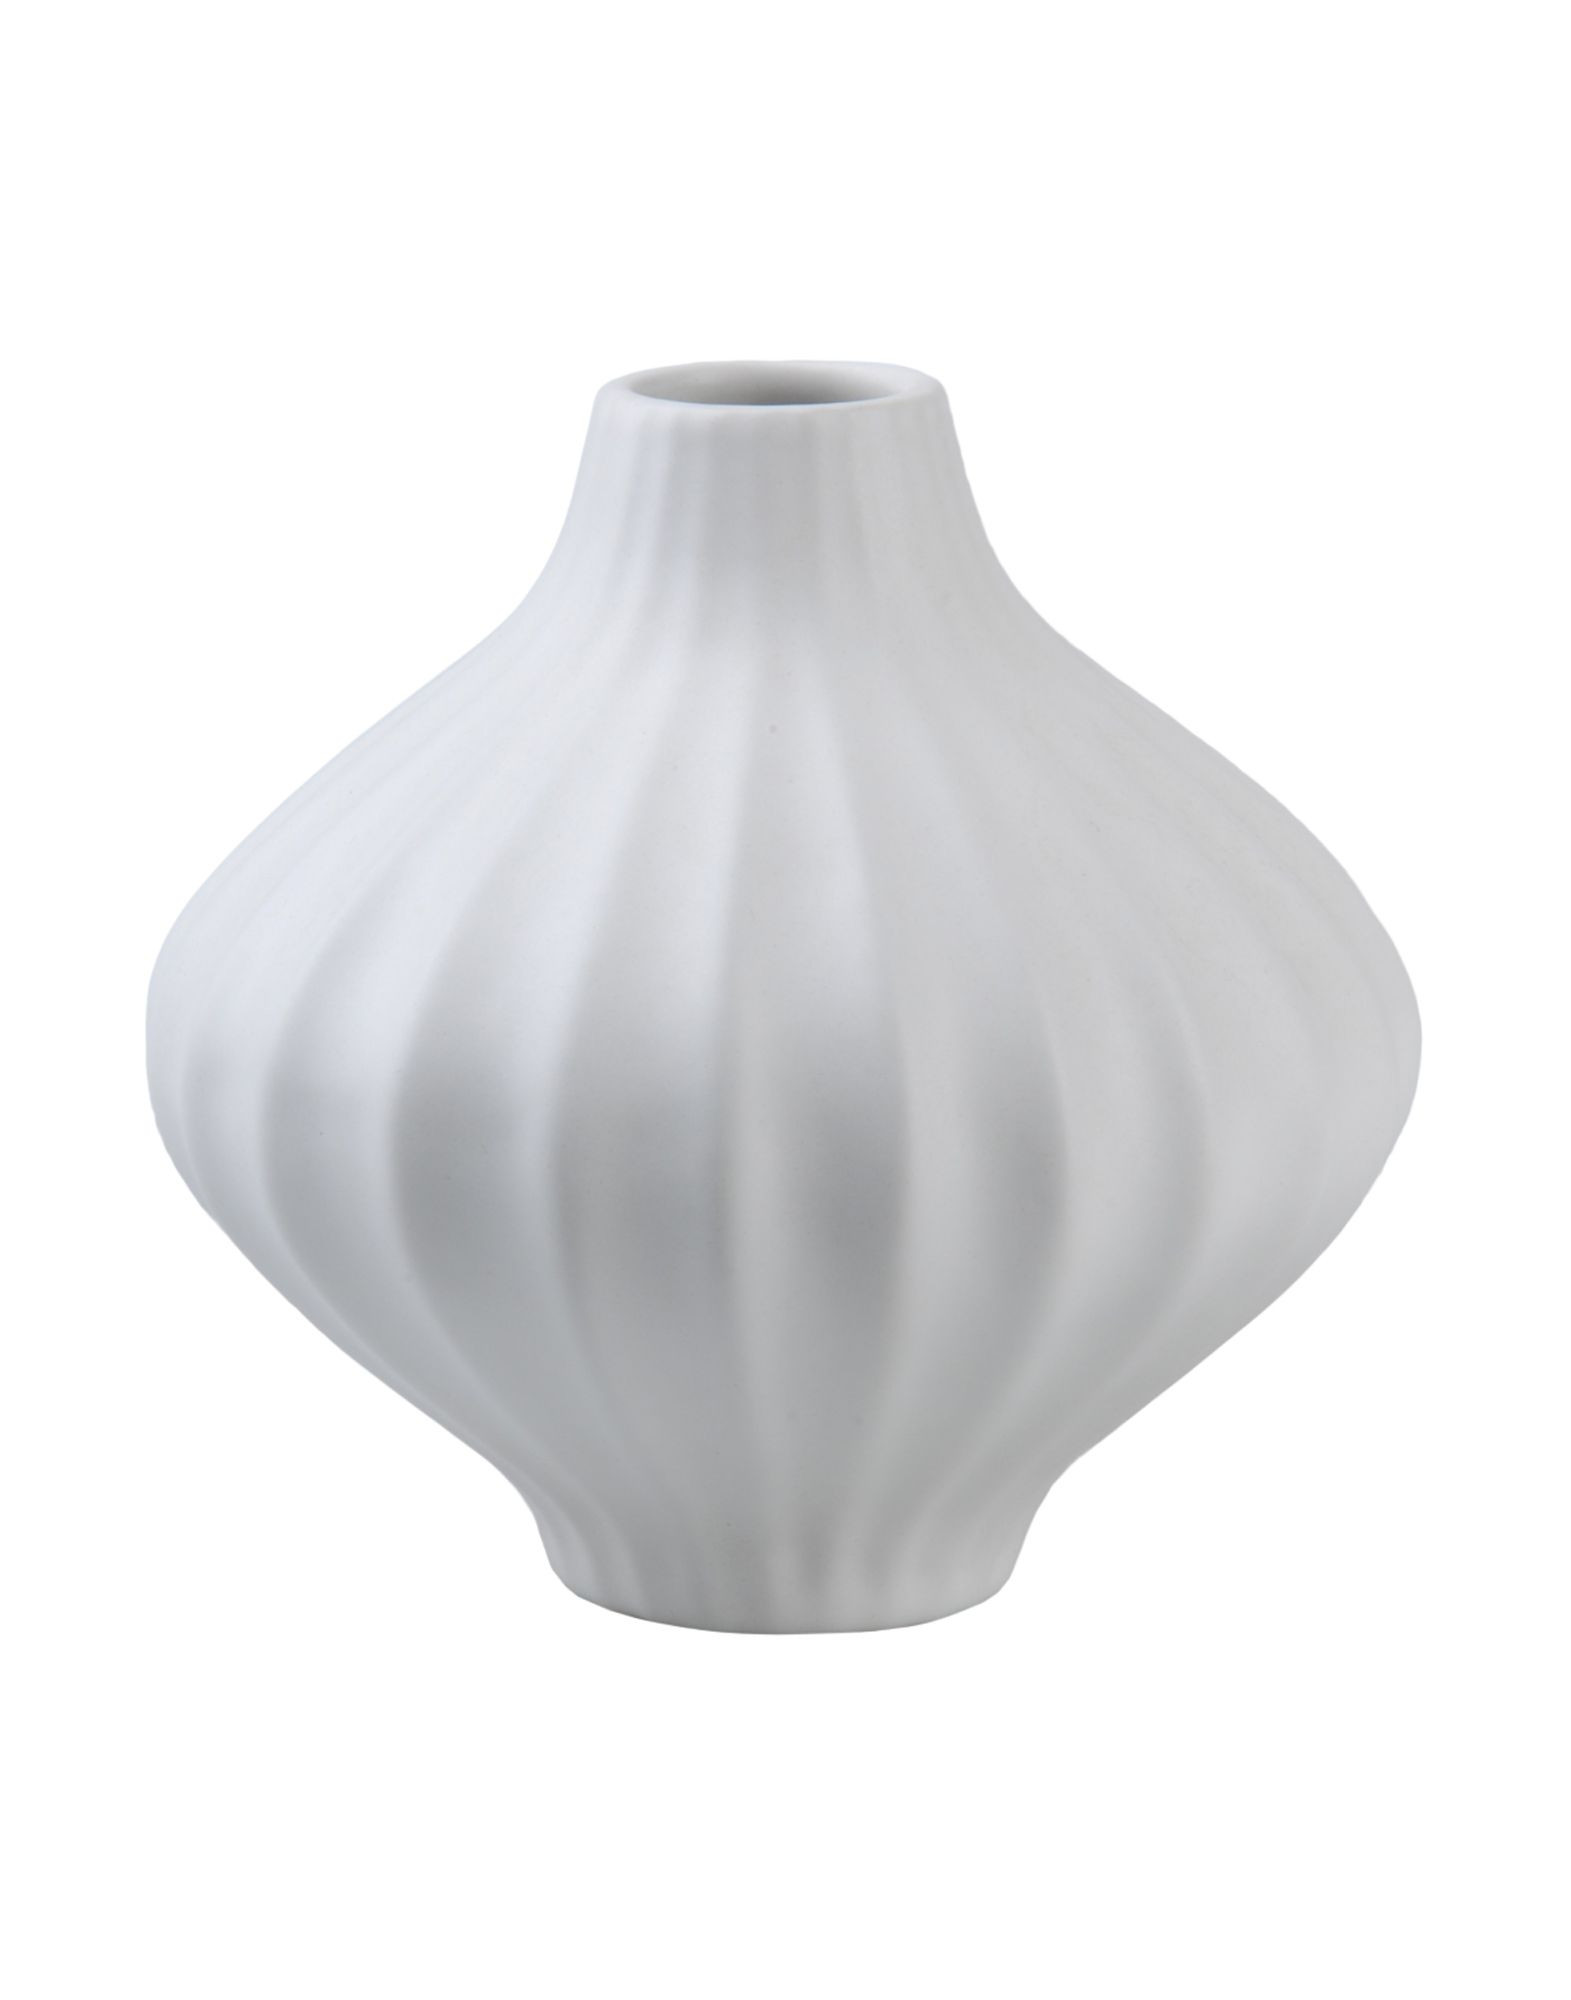 20 attractive Jonathan Adler White Vase 2024 free download jonathan adler white vase of shoppablea search with jonathan adler jonathan adler vases